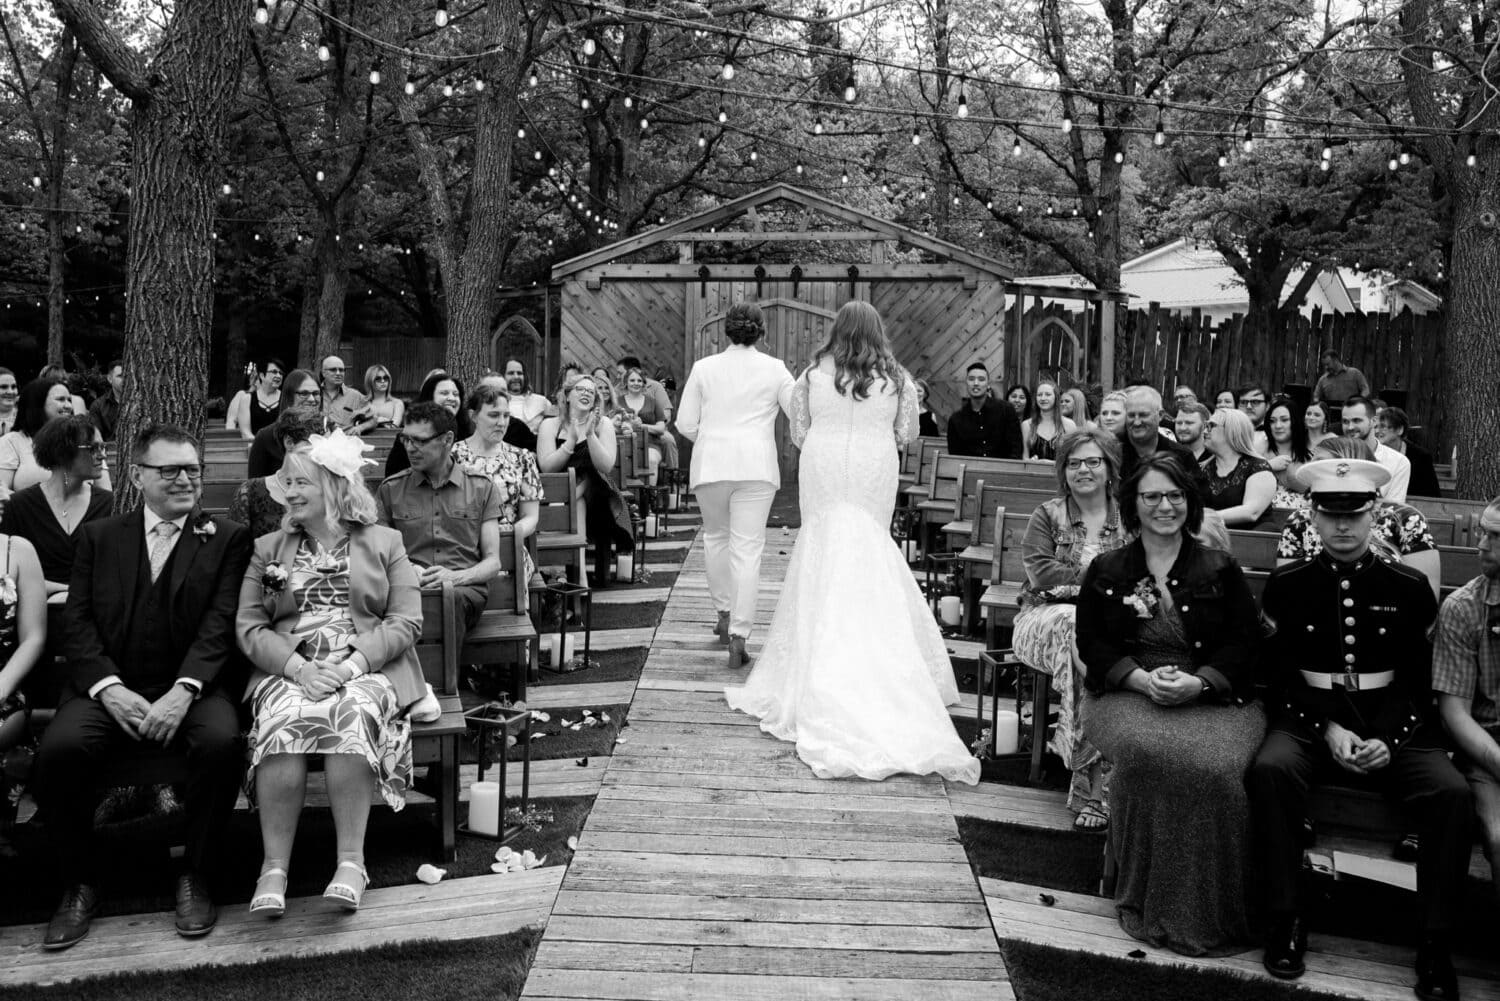 barnes place outdoor wedding ceremony